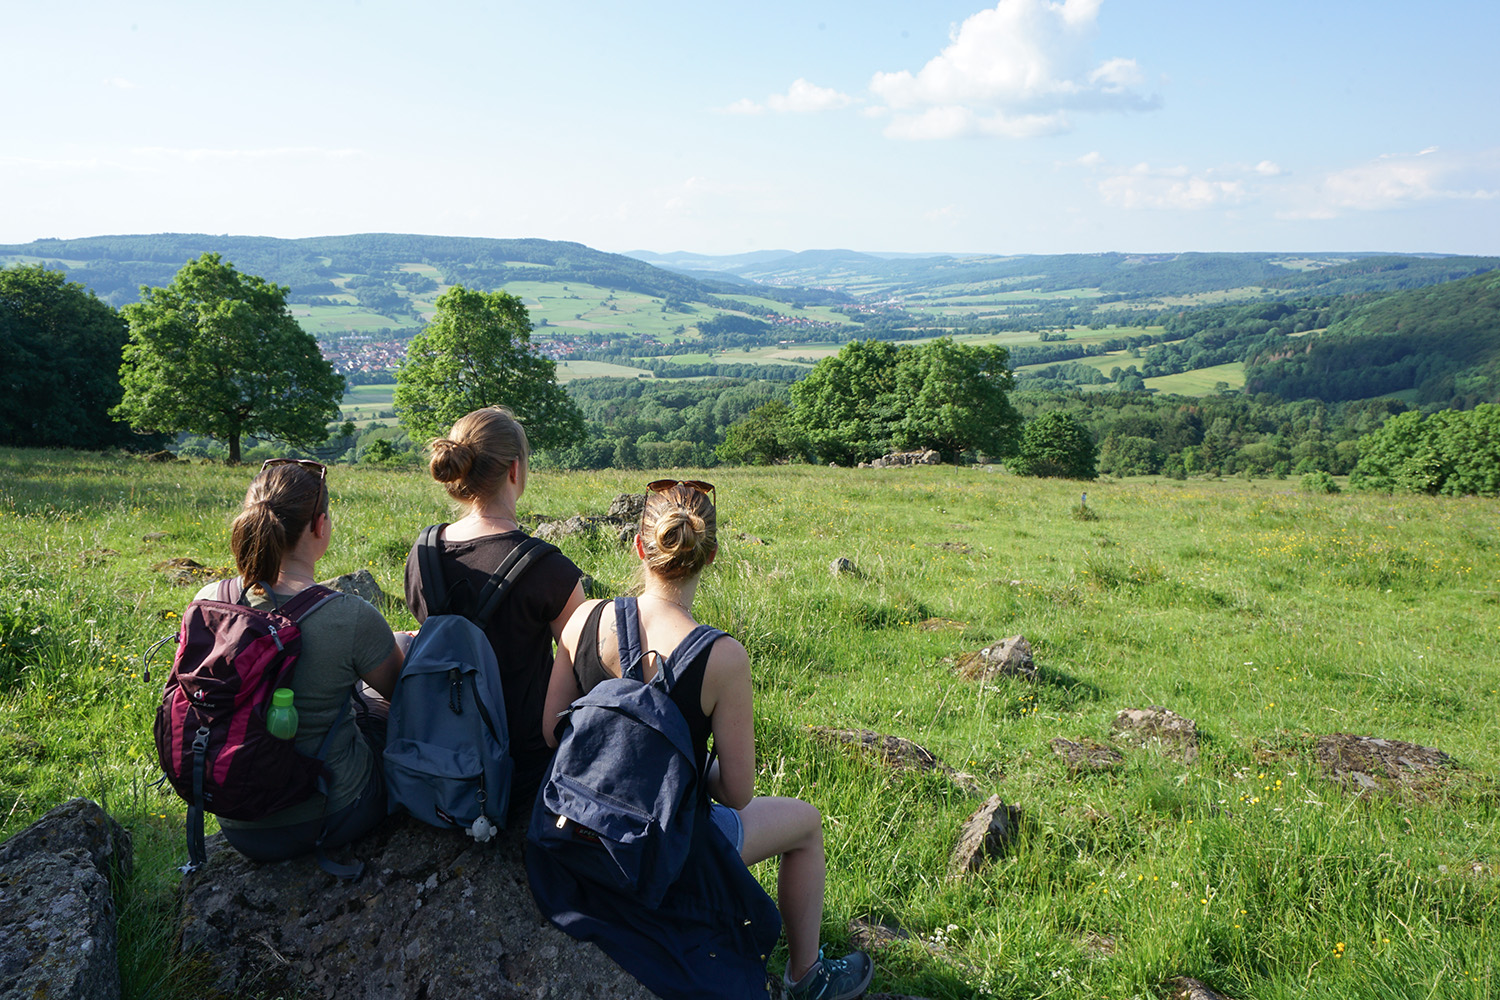 Blick ins herrliche Ulstertal, 3 Wanderinnen sitzen auf einem große Stein und genießen den Ausblick